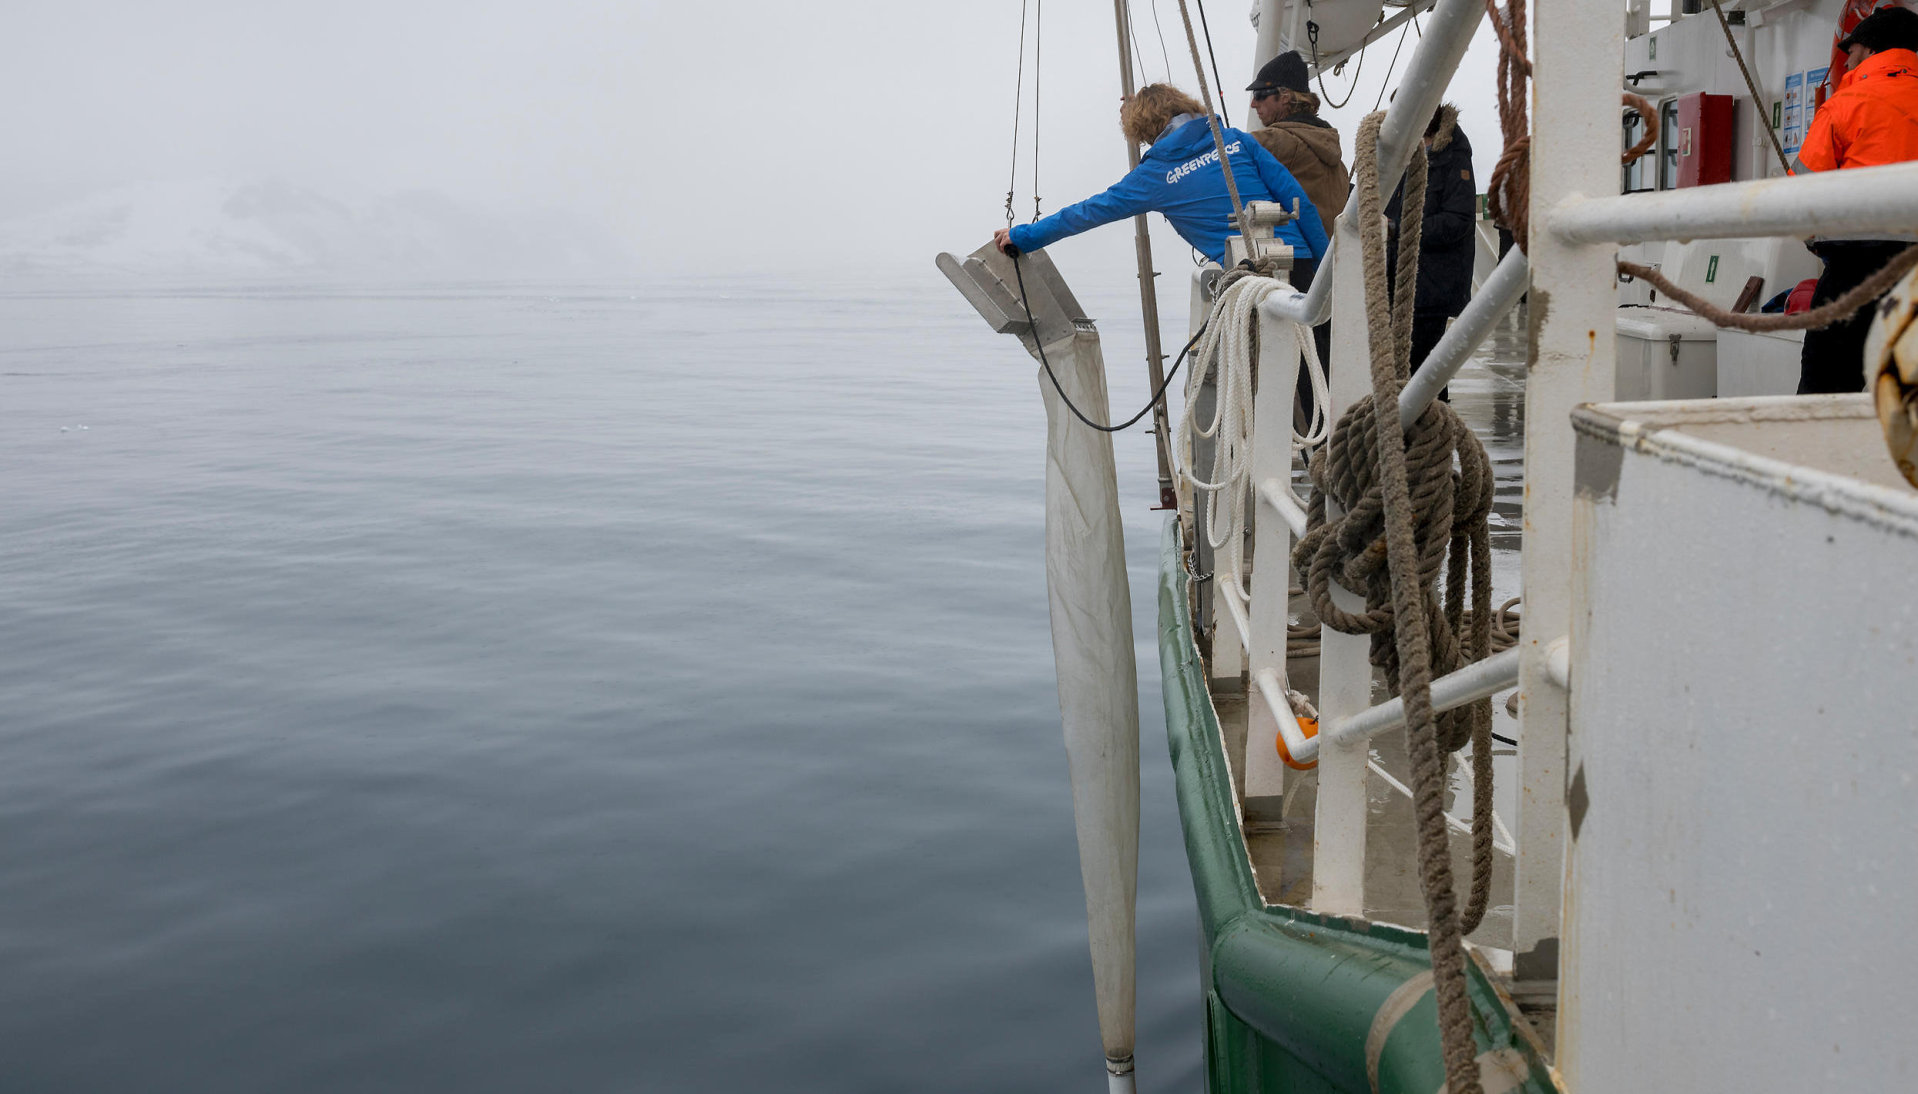 Et spesiallaget nett ble brukt i jakten på mikroplast i Antarktis.